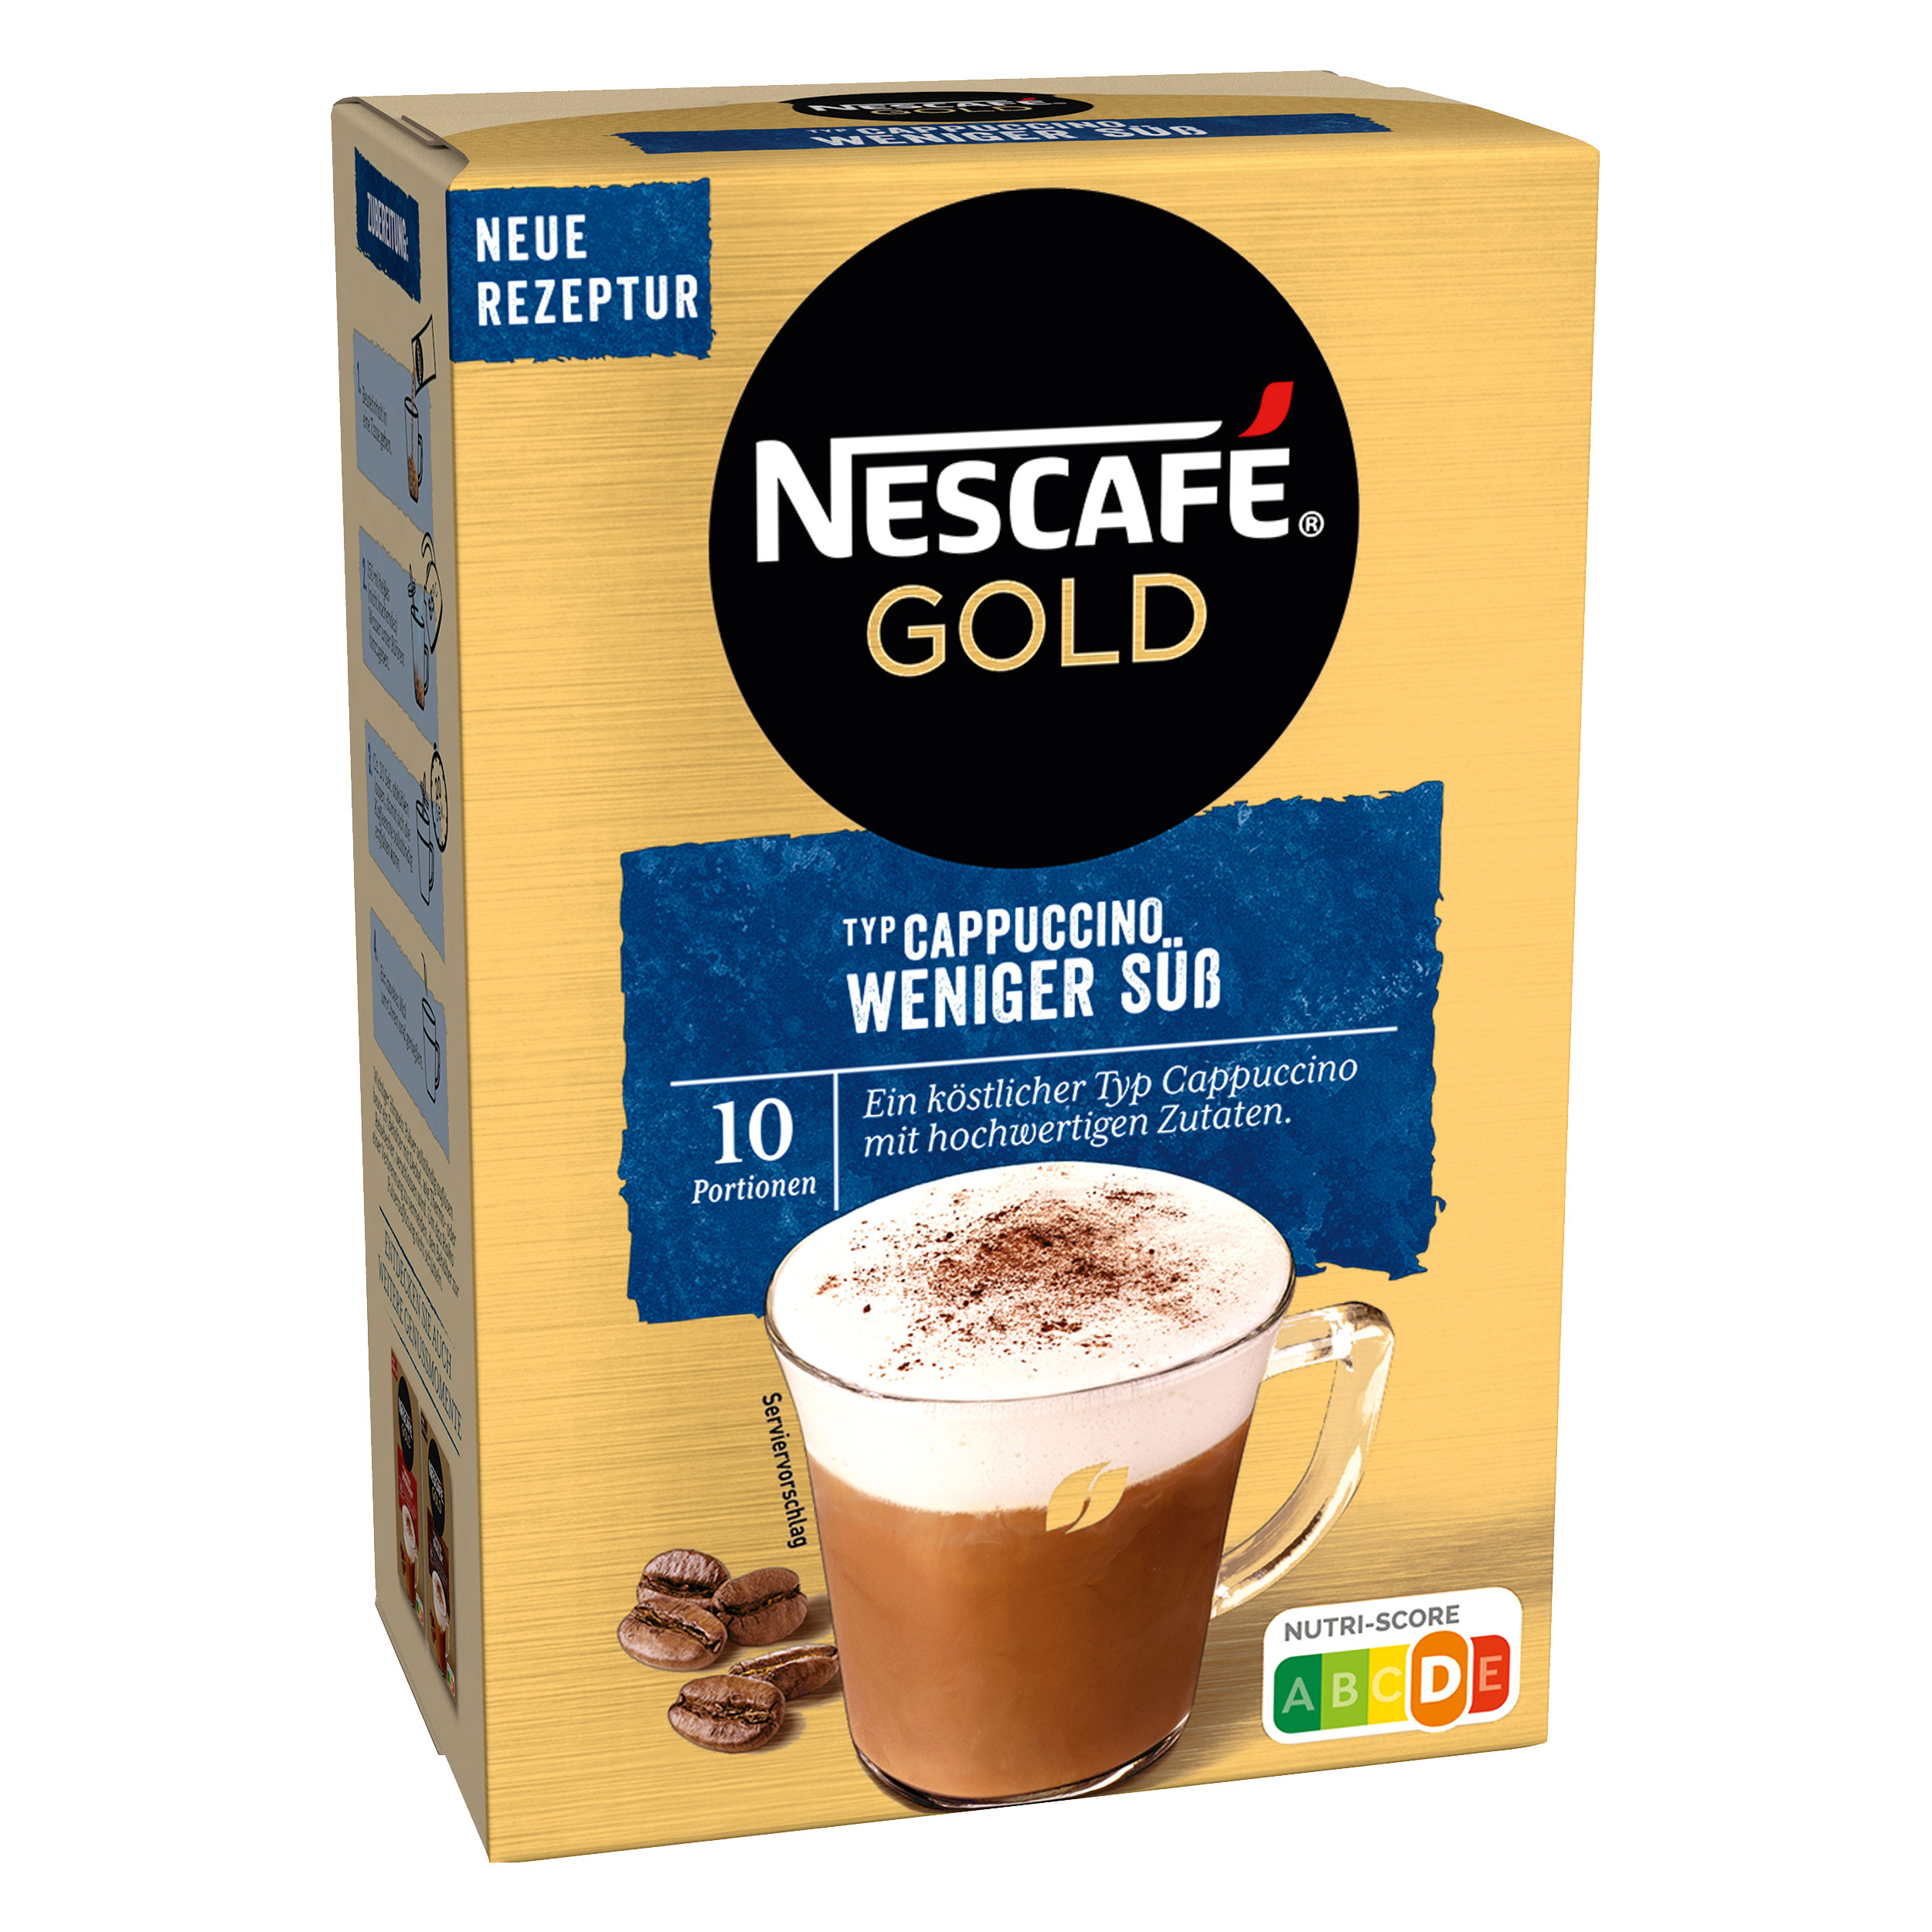 Nescafe Nescafé Gold Cappuccino s nízkým obsahem cukru 10ks, 125g